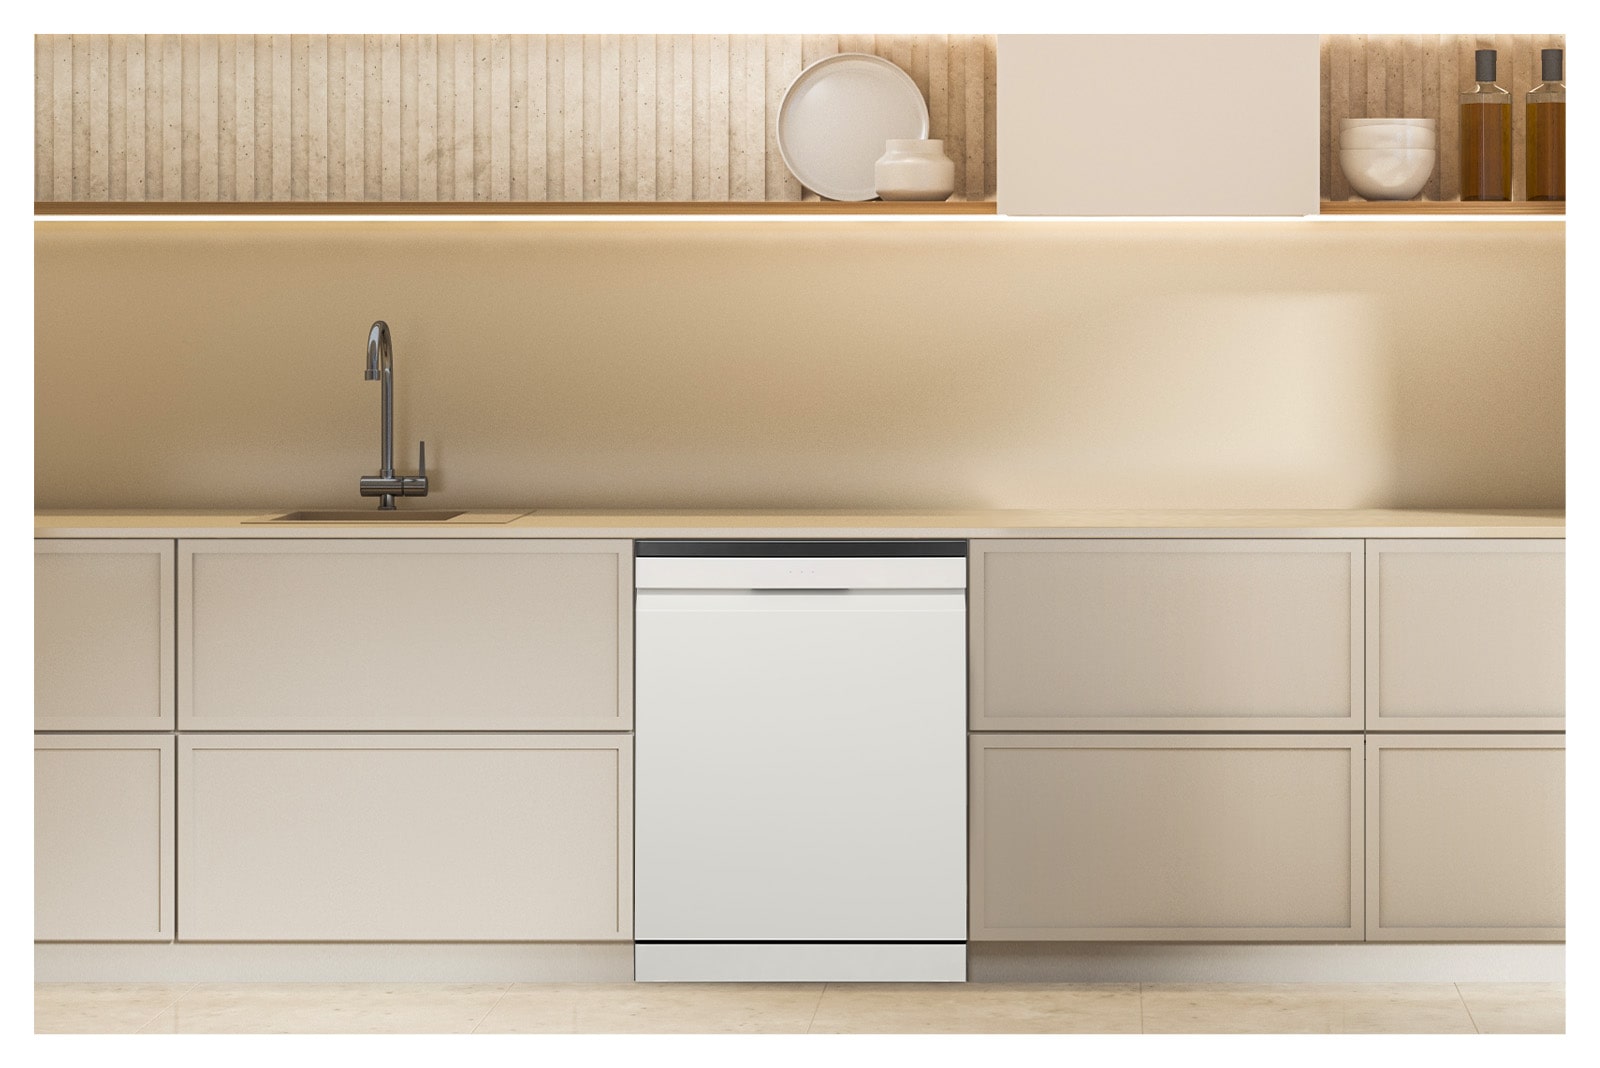 雪霧白 LG 洗碗機 Objet Collection 放置在明亮色調的現代廚房中。